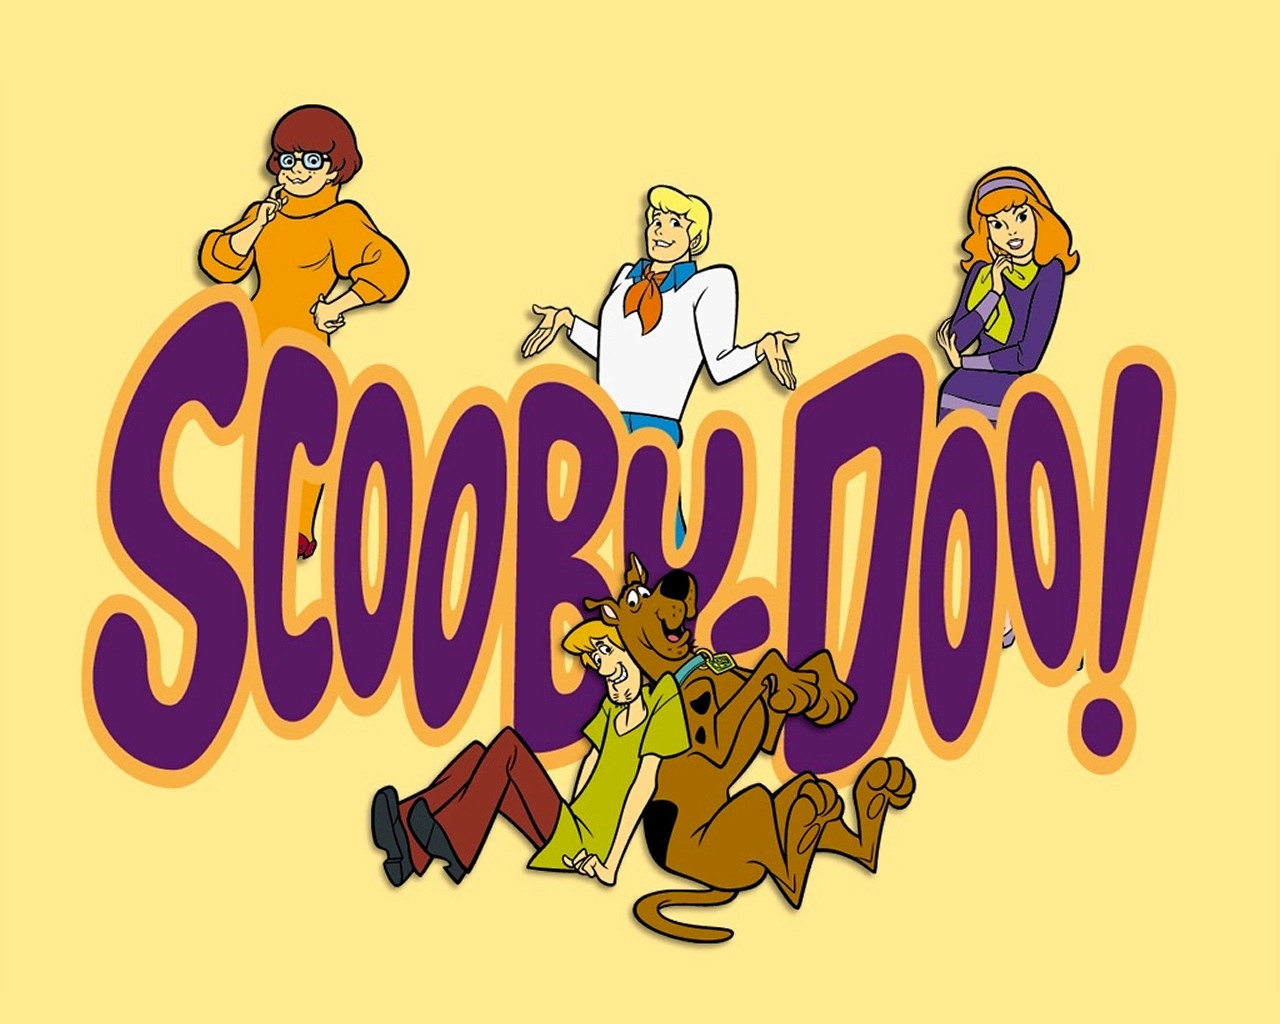 "Scooby-Doo" desktop wallpaper (1280 x 1024 pixels)